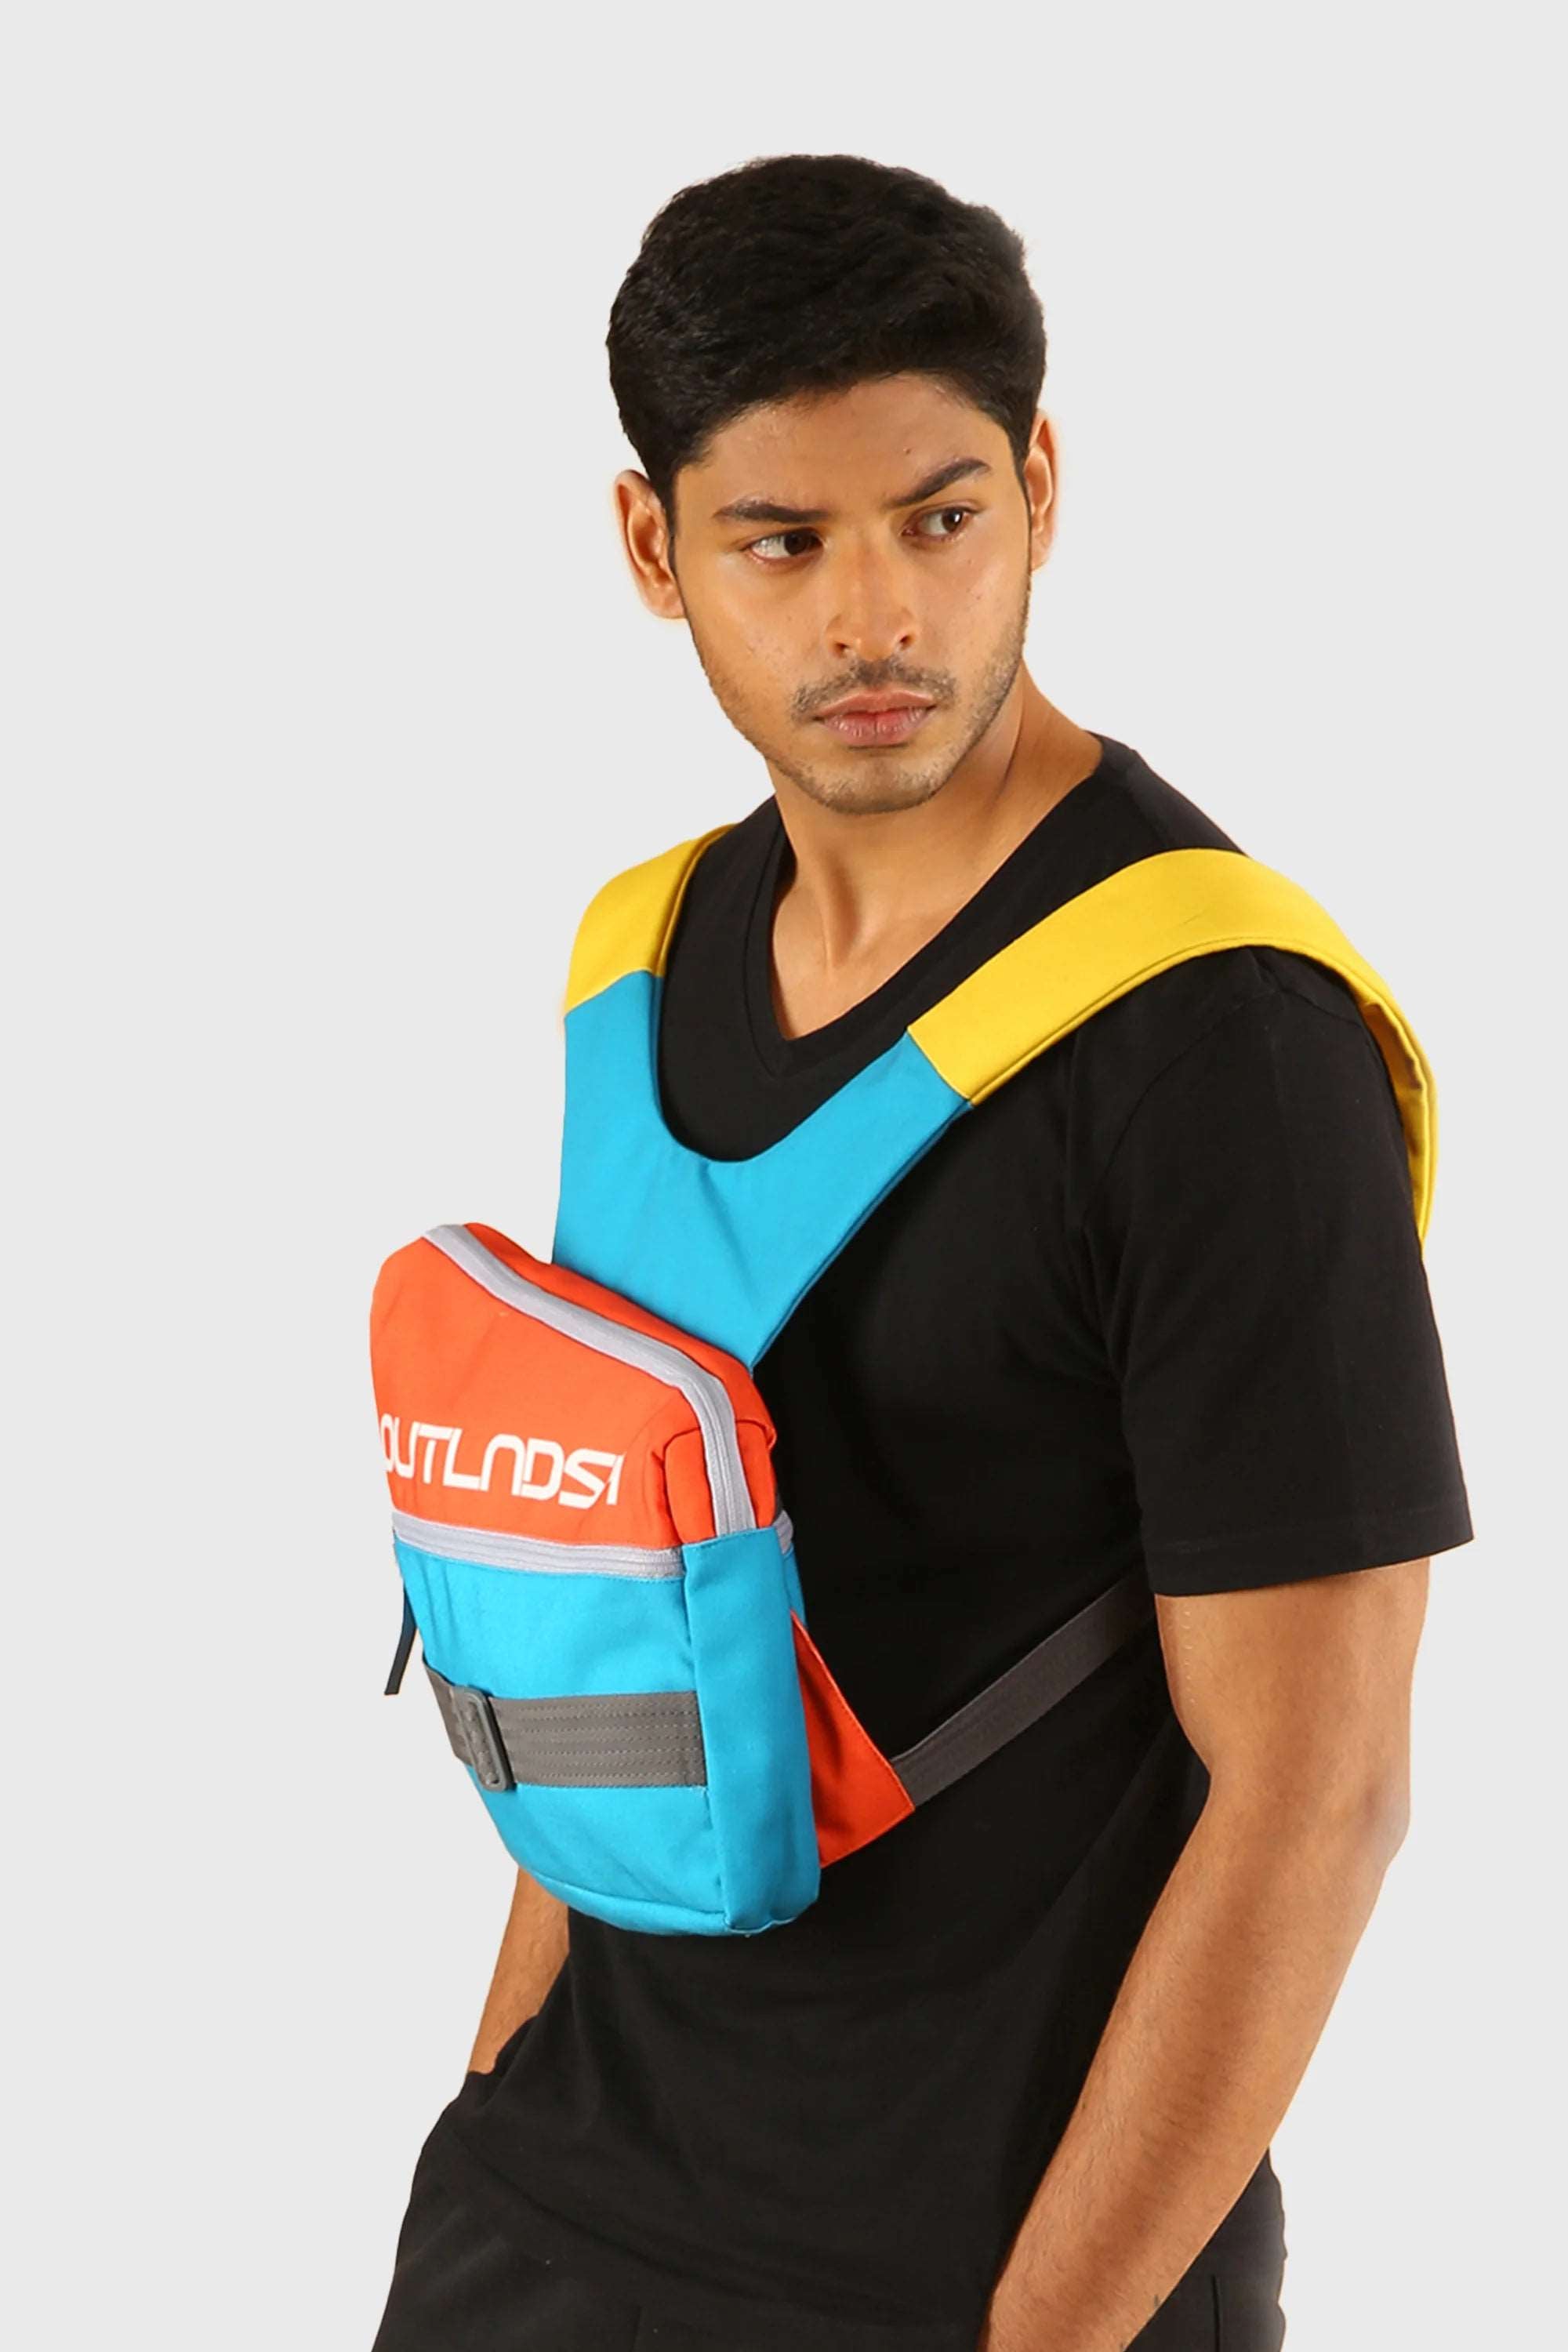 OUTLNDSH Mini Backpack bag plus chest bag orange color 